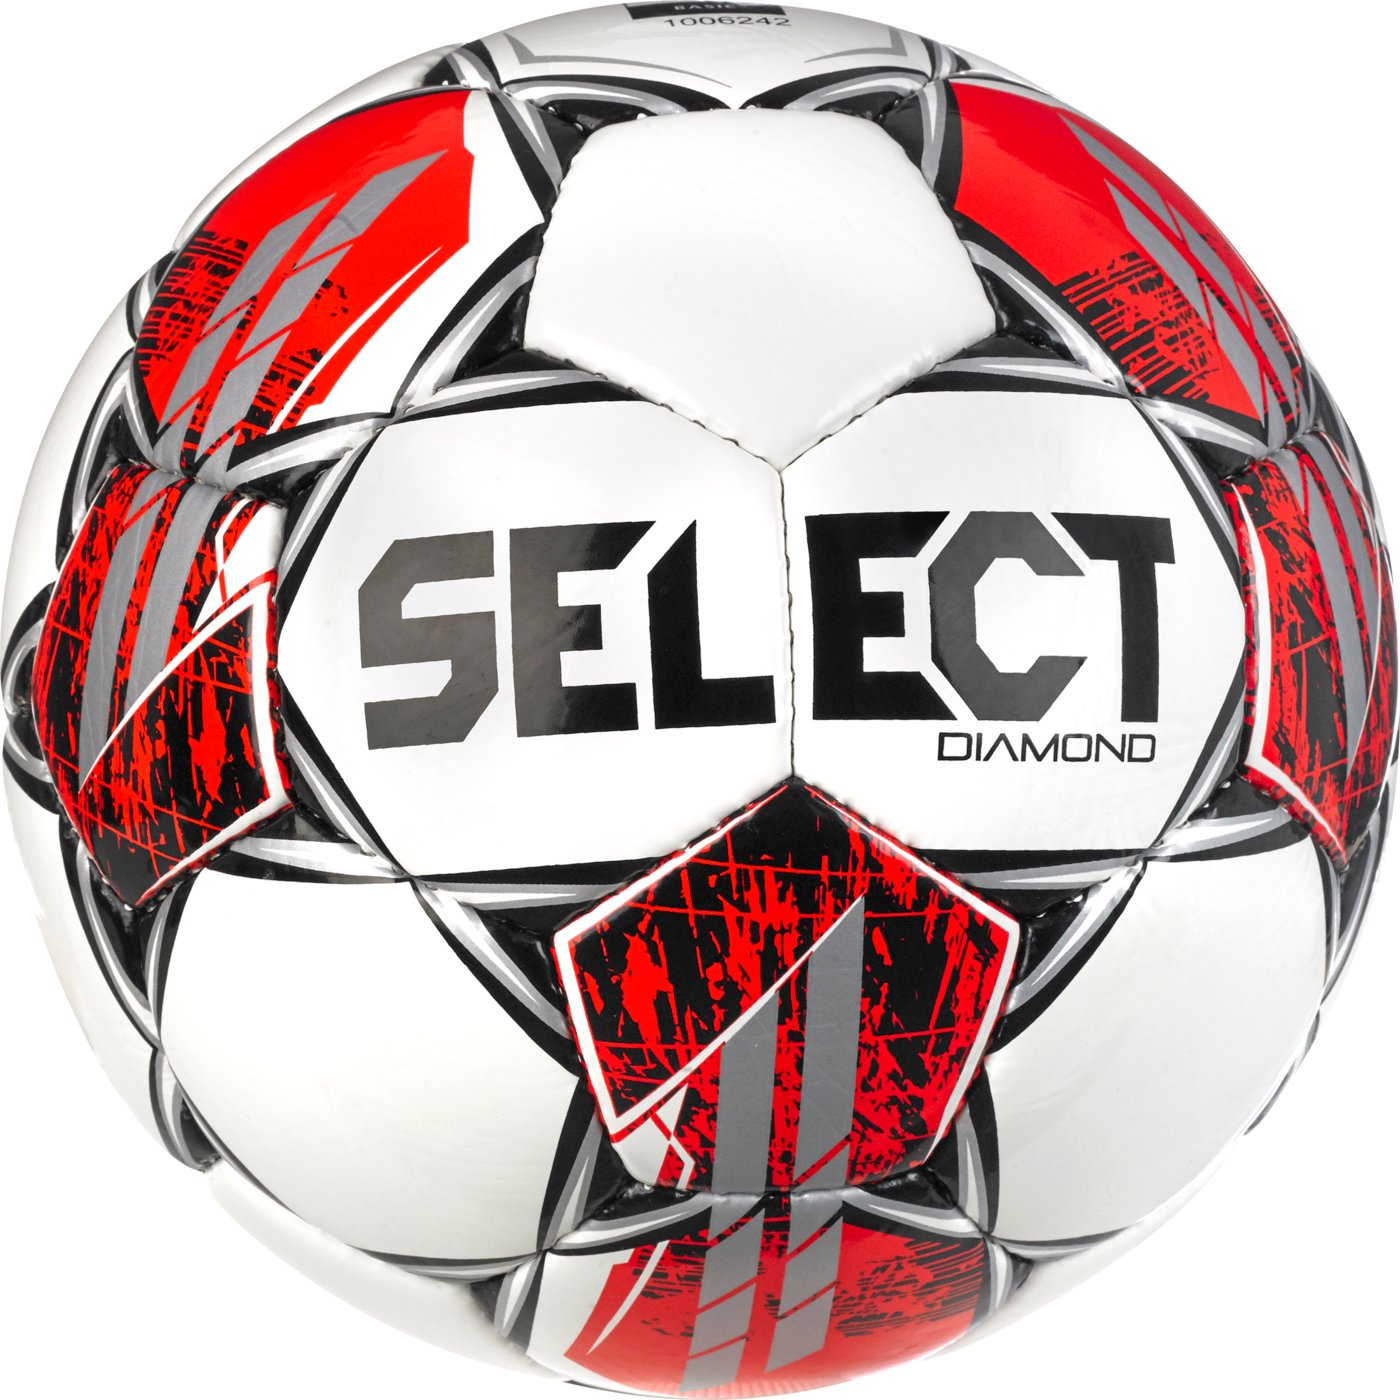 М'яч футбольний SELECT Diamond v23 (134) біл/червон, 5, 5